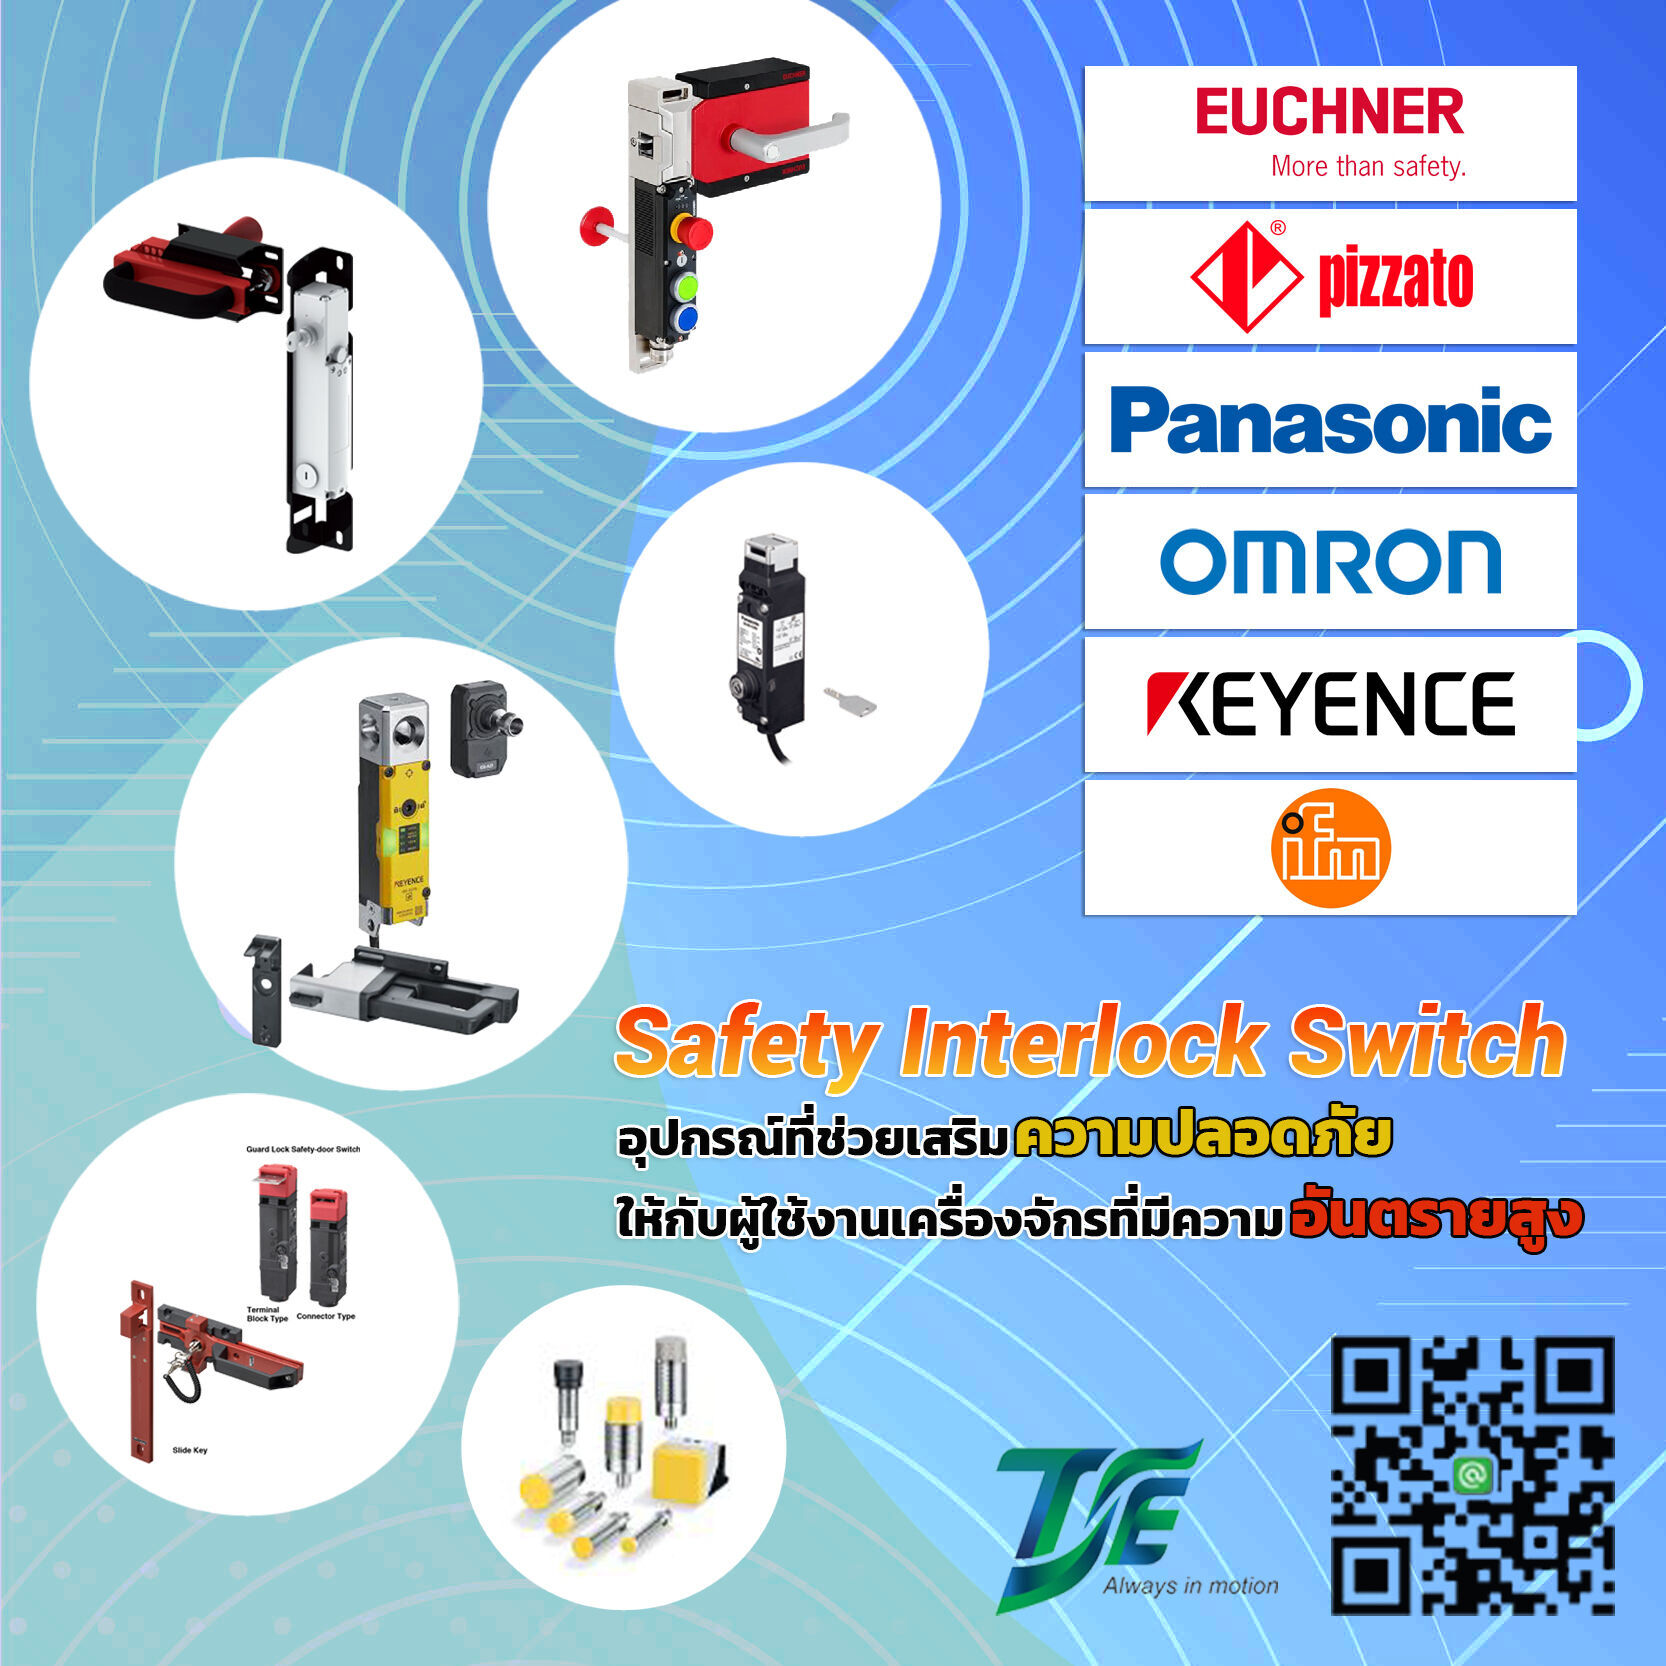 Panasonic
Omron
Pizzato
Keyence
Euchner
ifm
Safety Interlock Switch